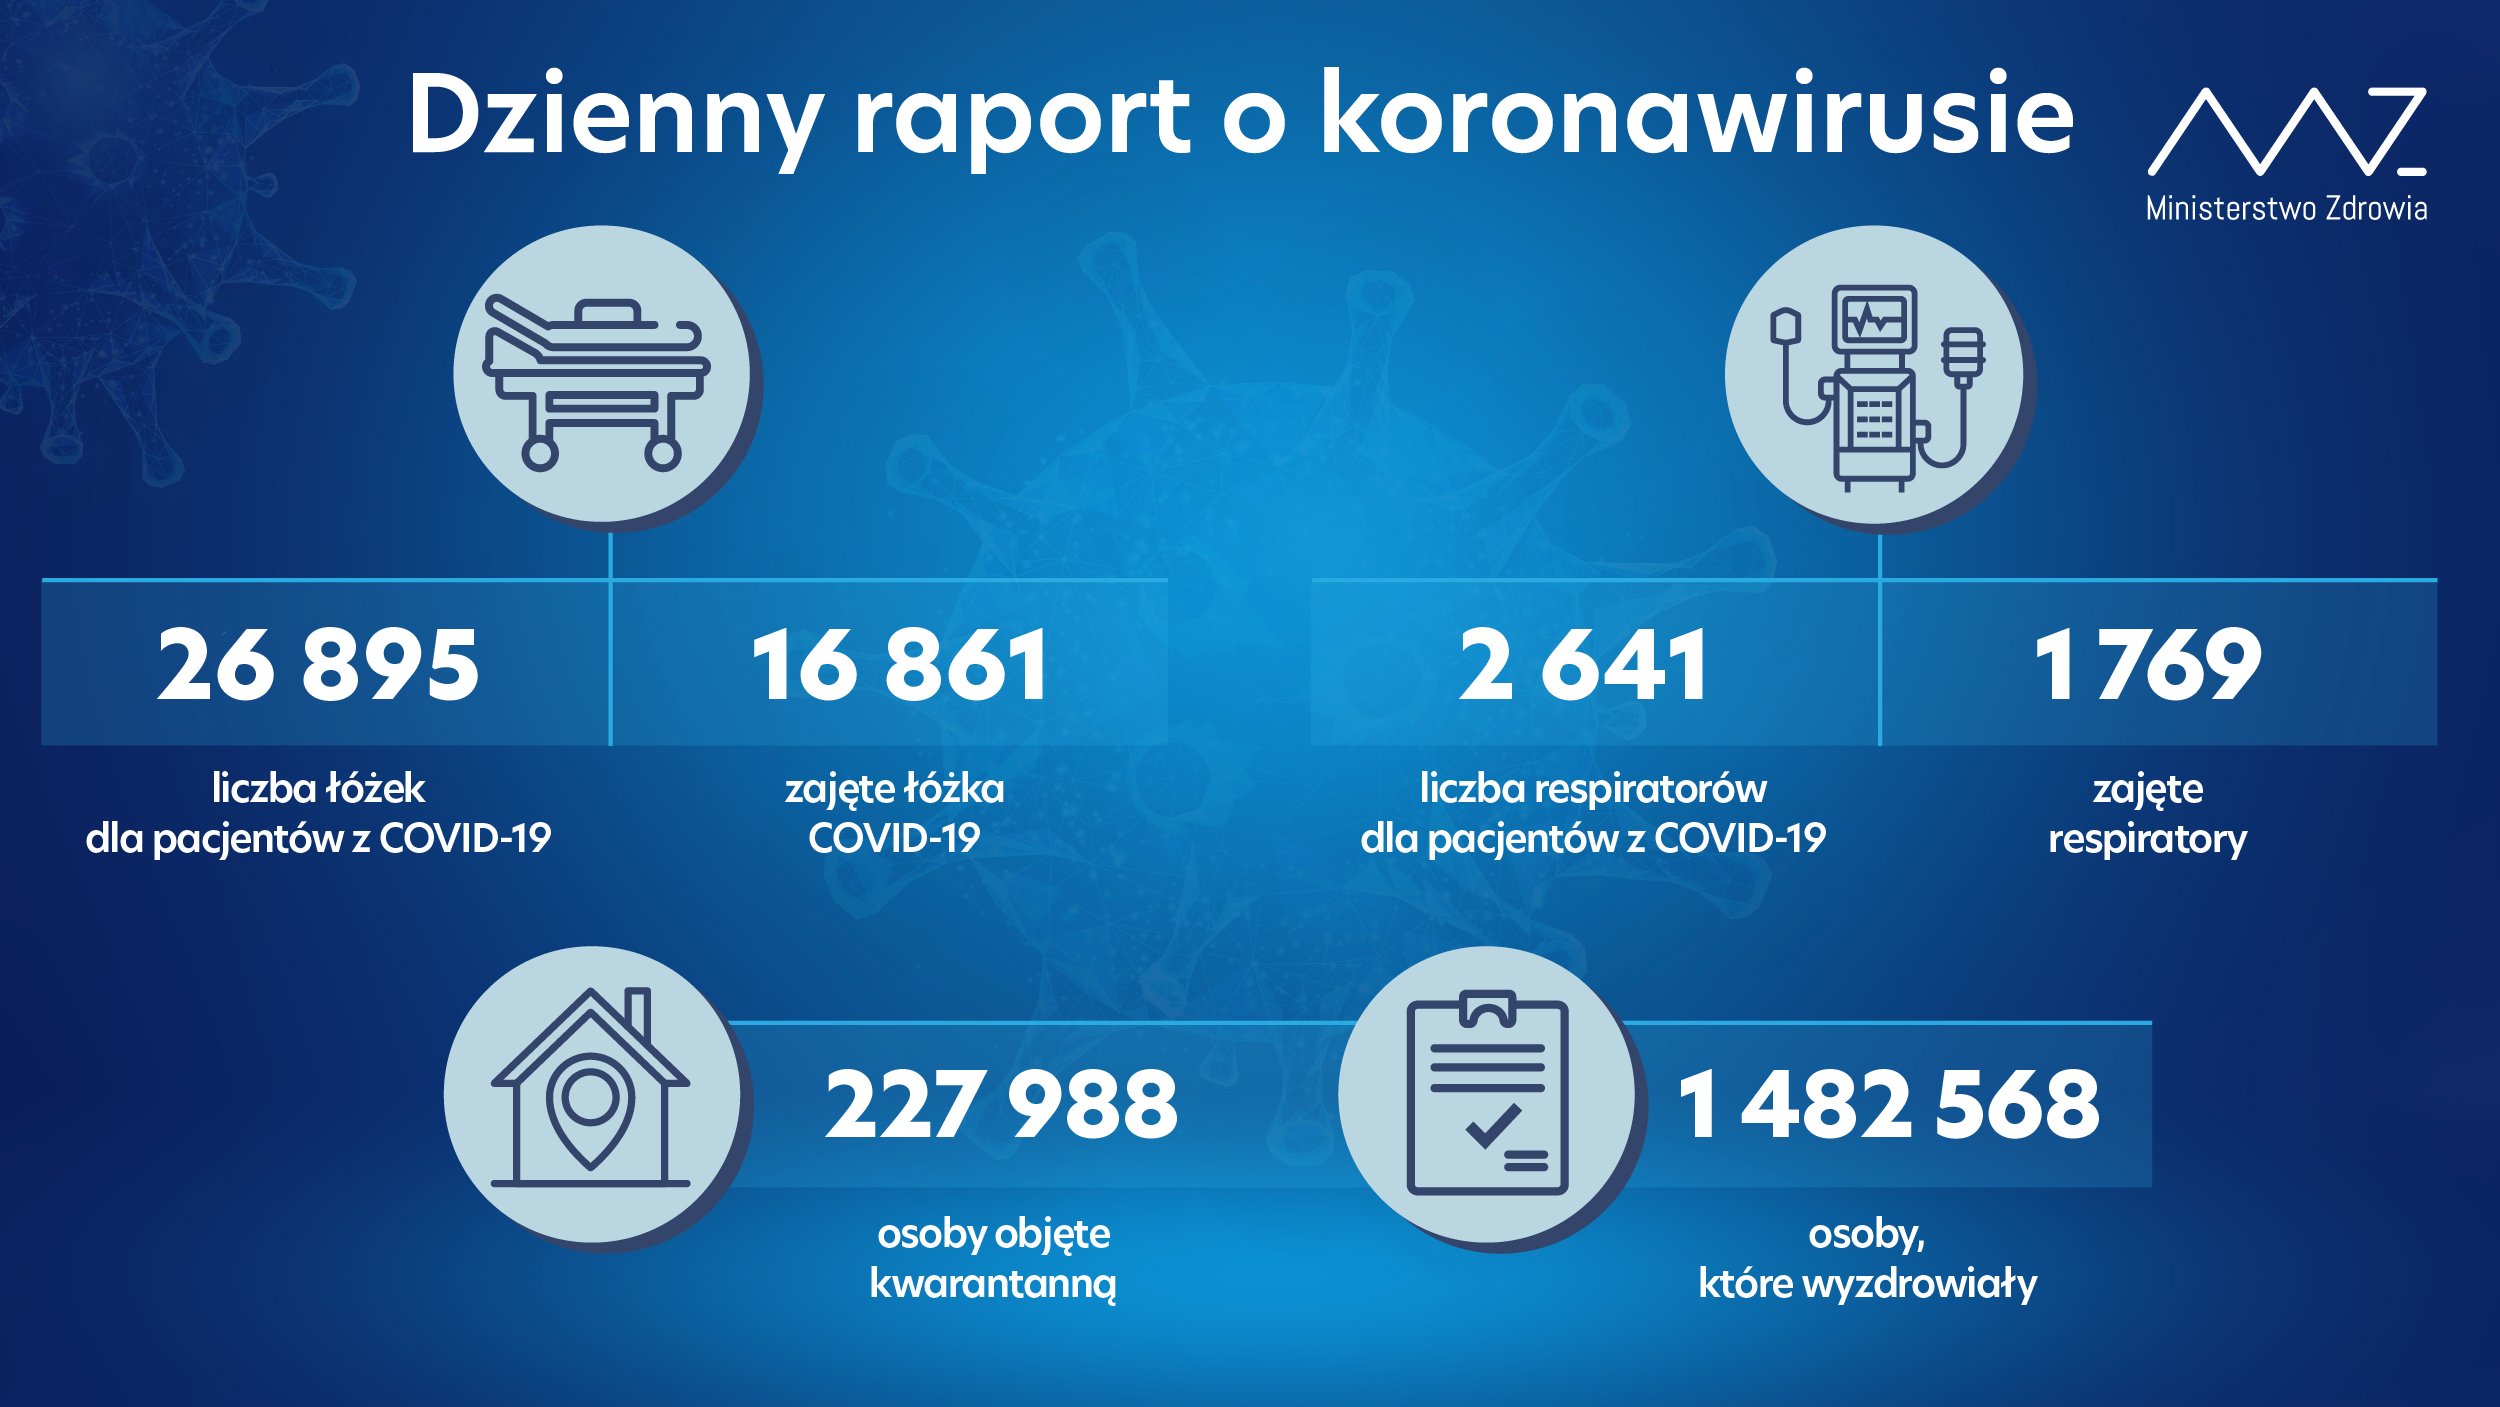 13 574 nowe zakażenia koronawirusem w kraju, 406 w woj. lubelskim